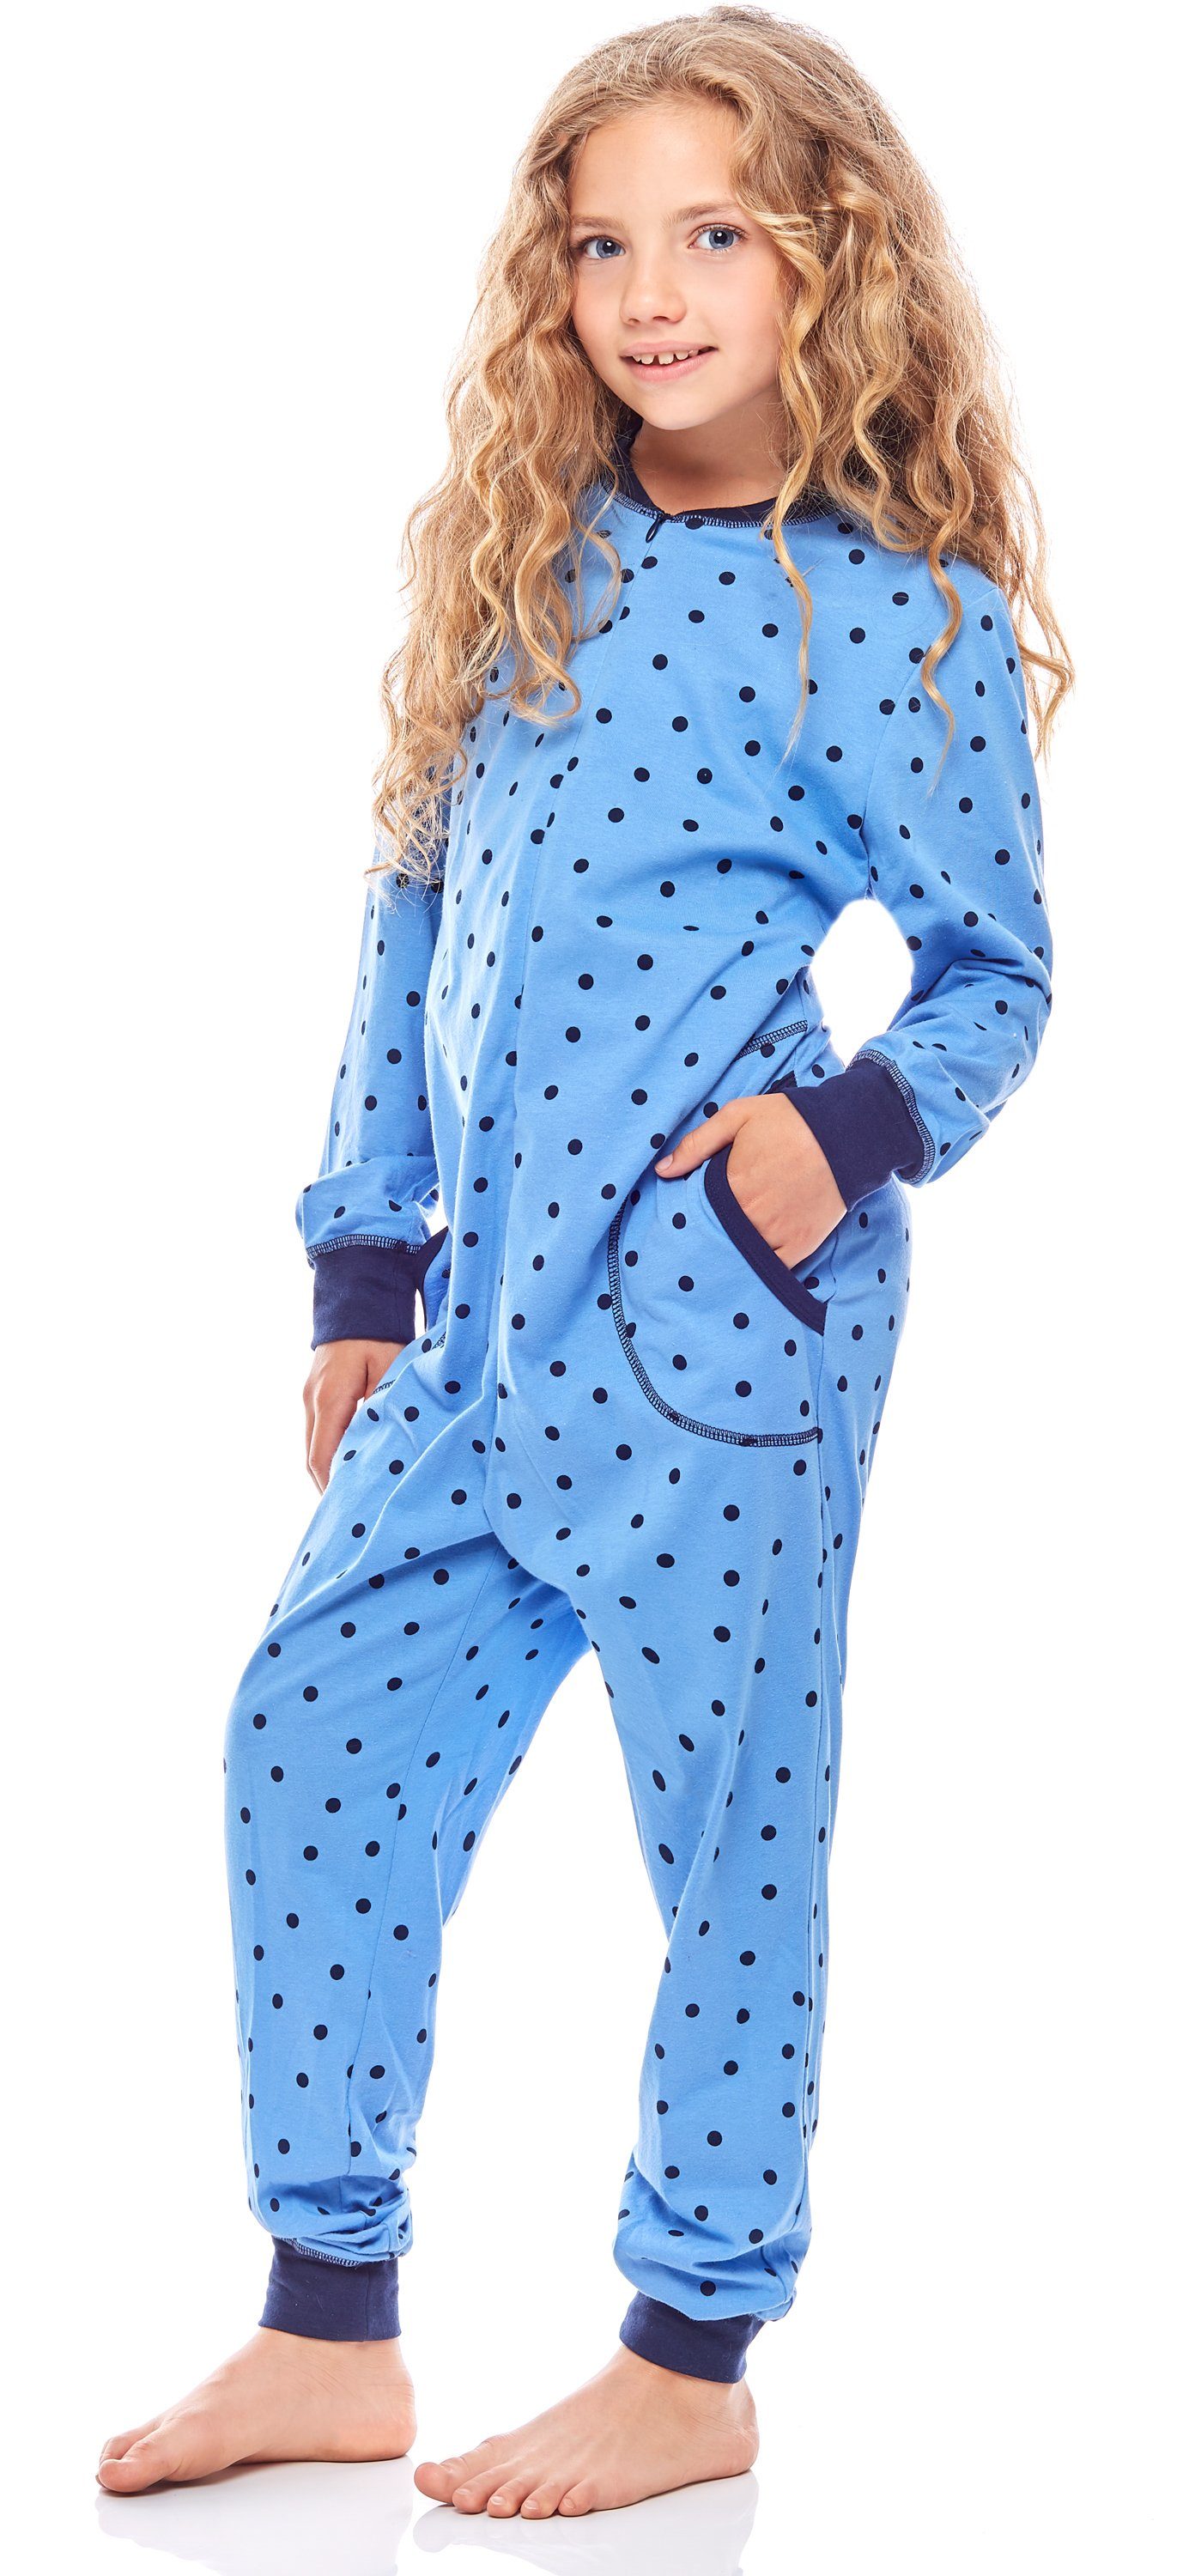 MS10-186 Punkte Marine Mädchen Schlafanzug Jumpsuit Merry Schlafanzug Style Blaue